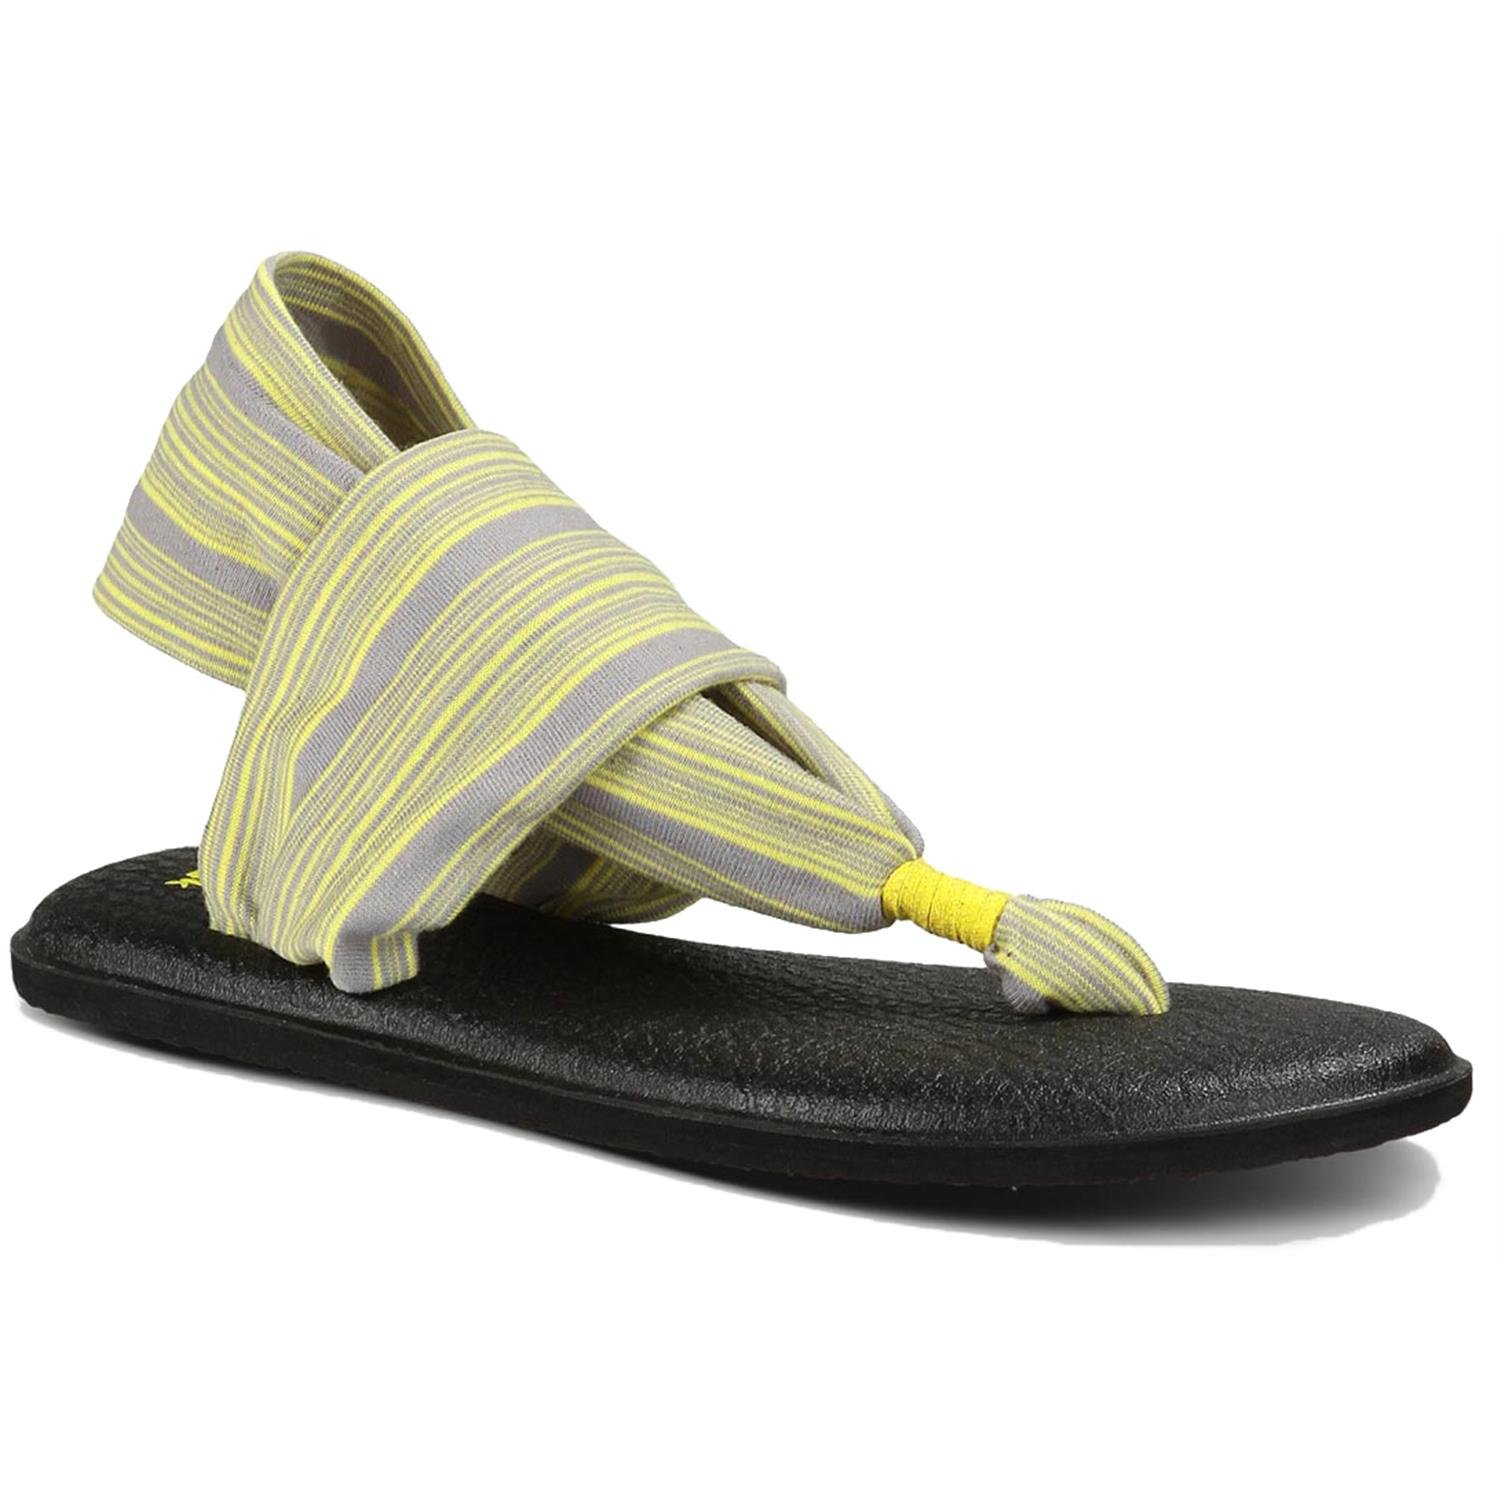 Sanuk Yoga Sling 2 Sandals - Women's | evo